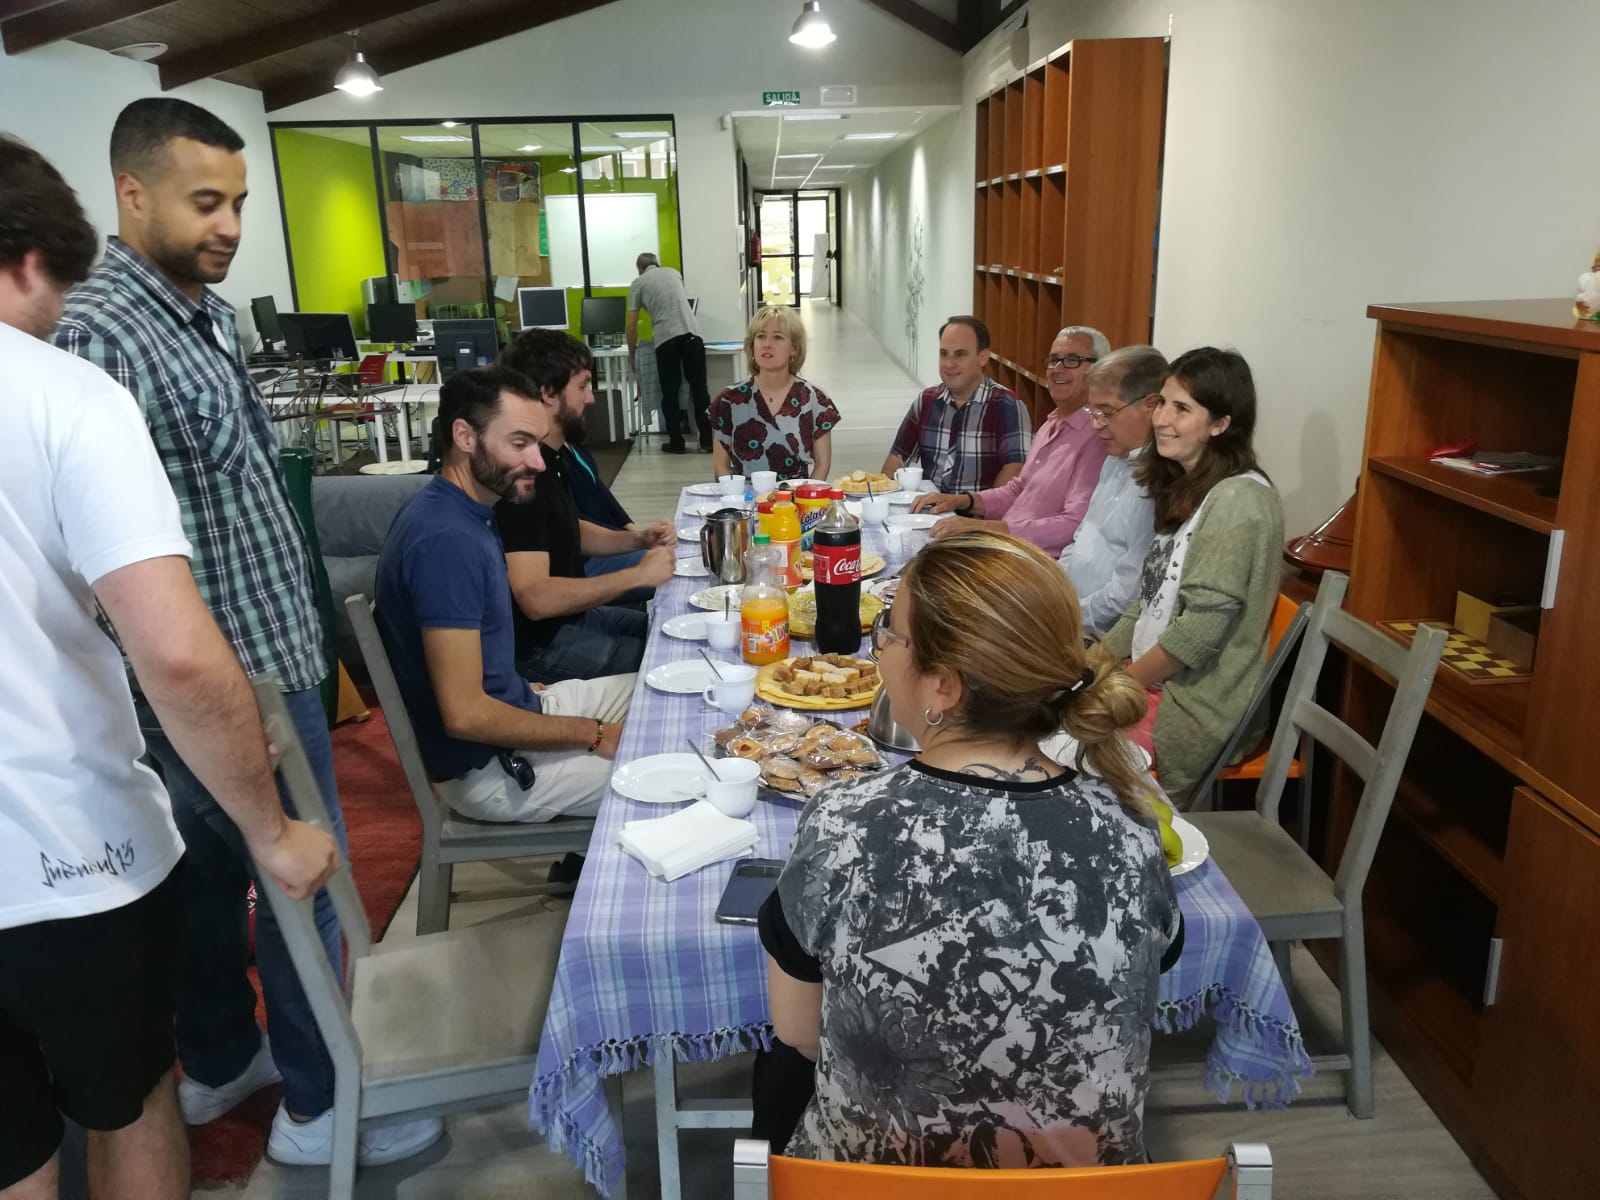 Participantes del programa Bestalde compartiendo una comida